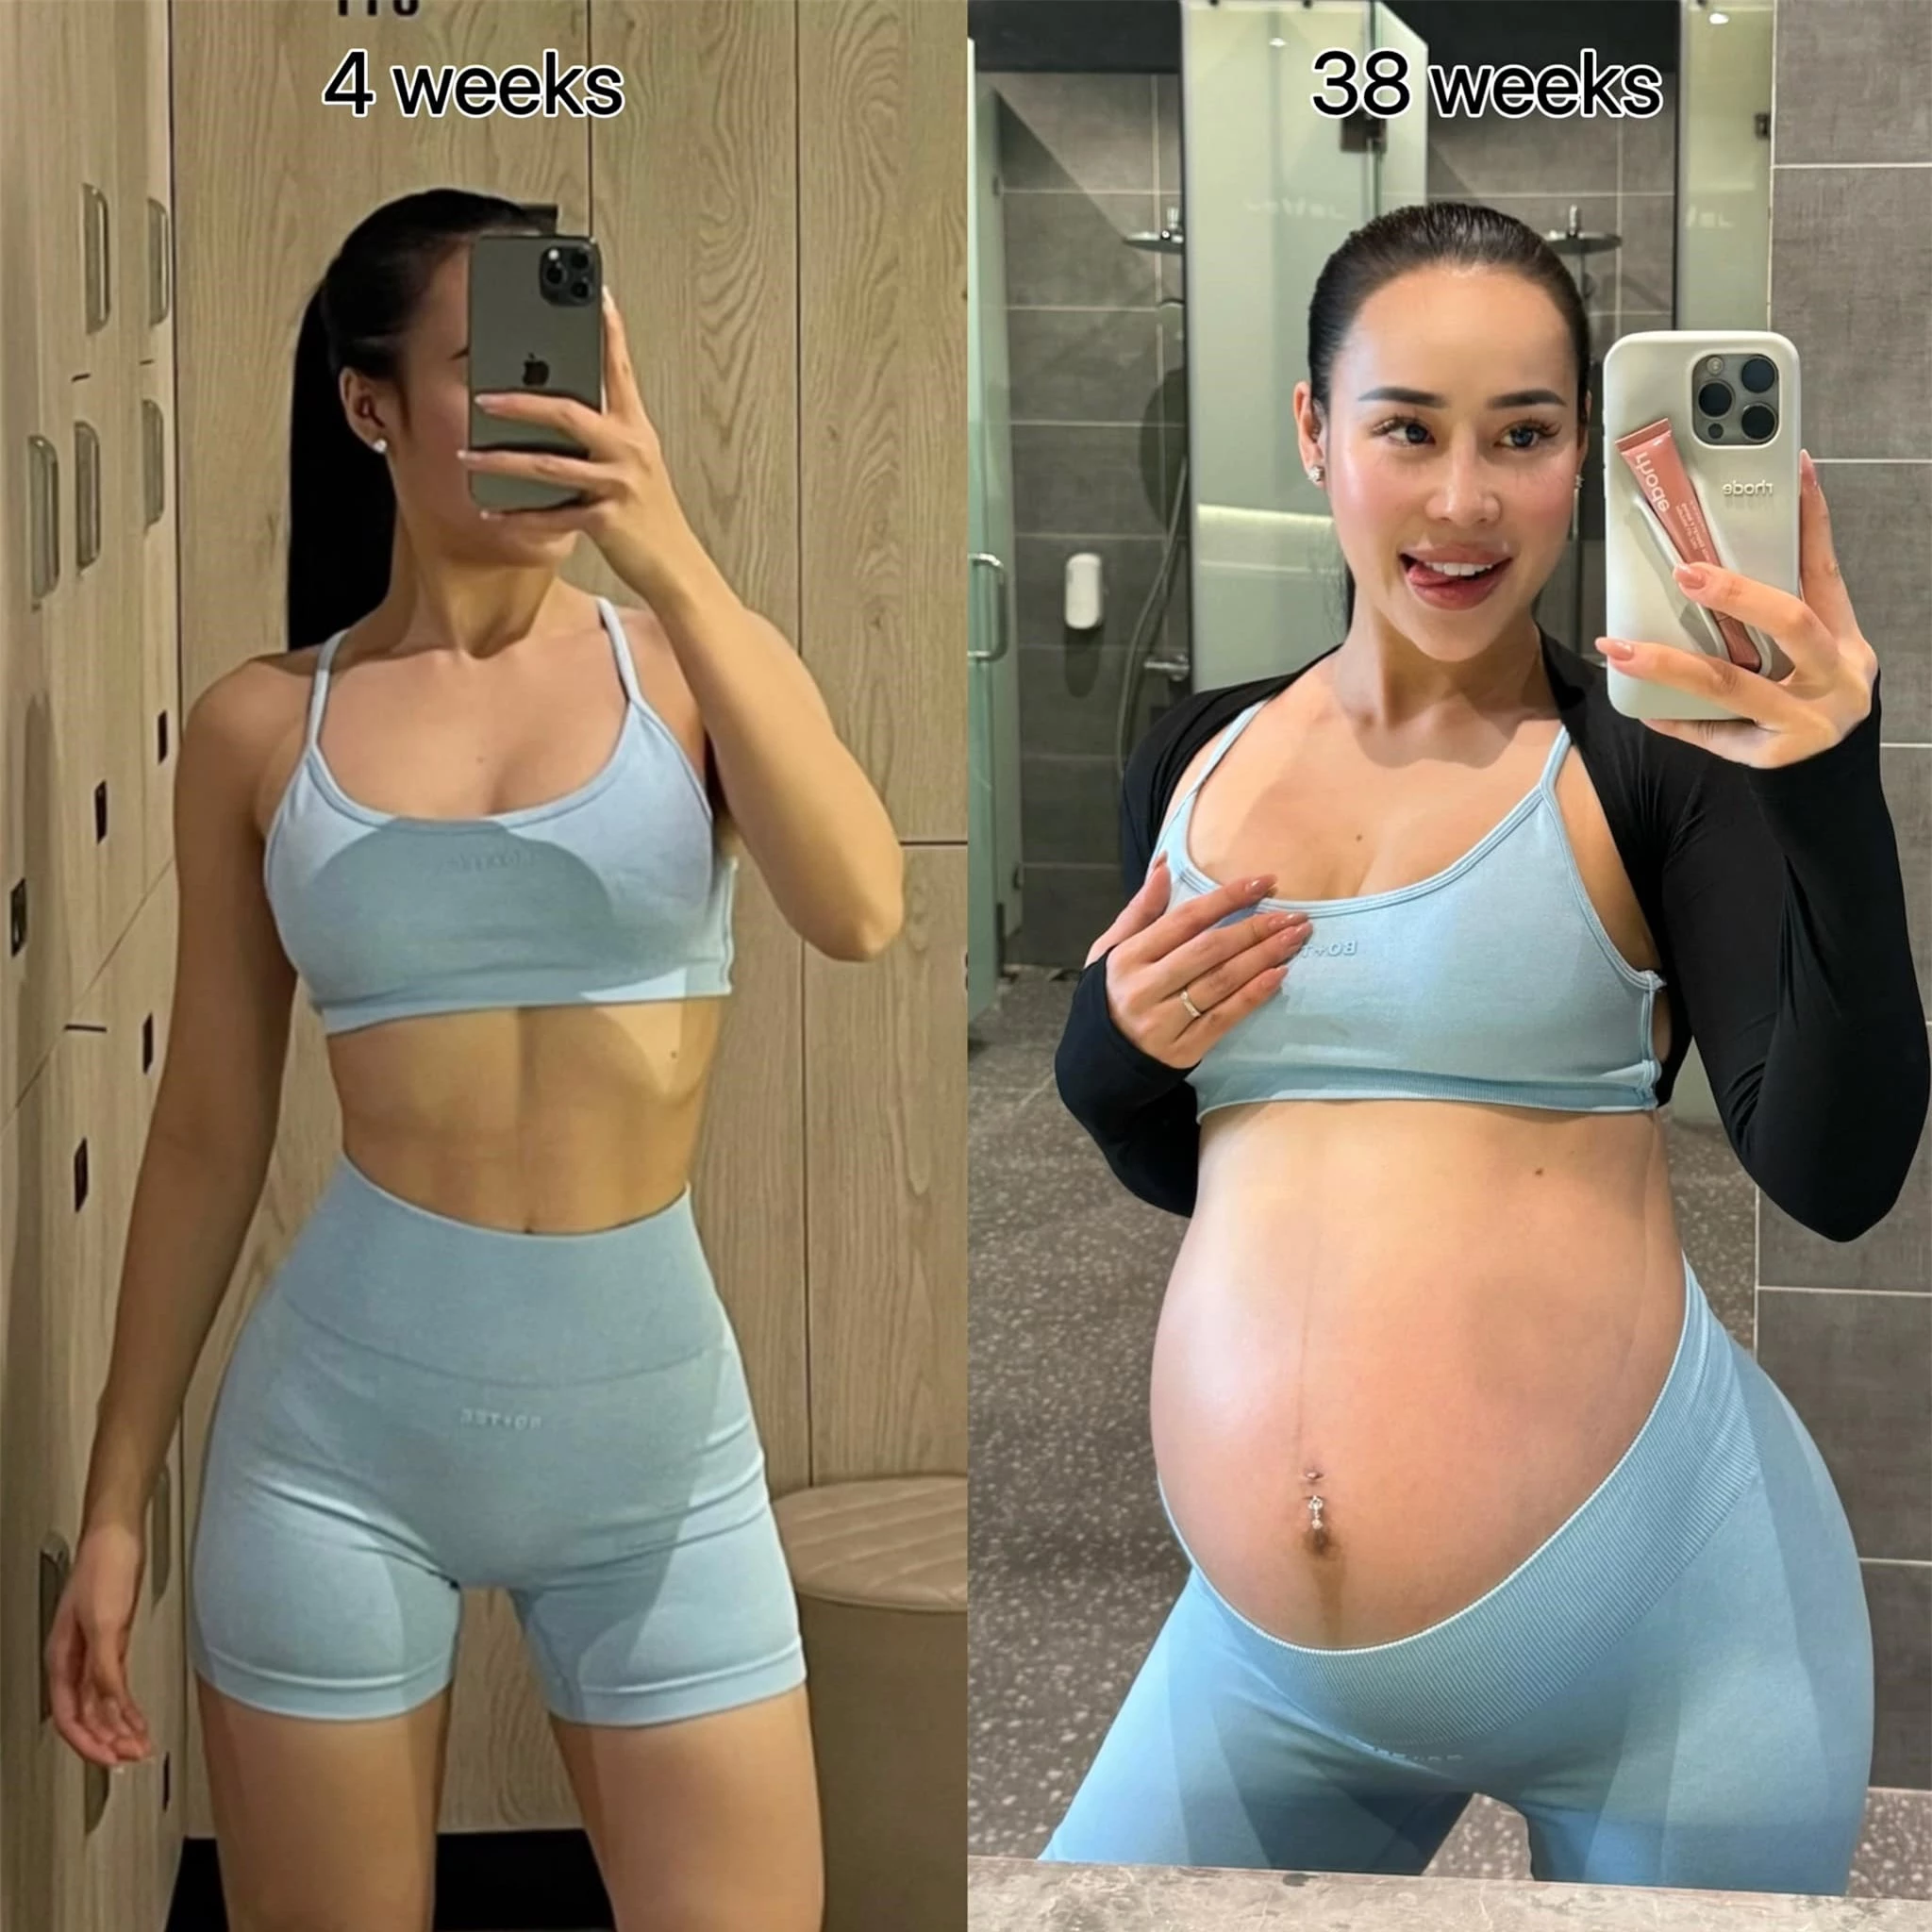 Khi hot girl đình đám làng fitness mang thai: Bầu 39 tuần vẫn nâng tạ 160kg nhìn "toát mồ hôi hột" - 5